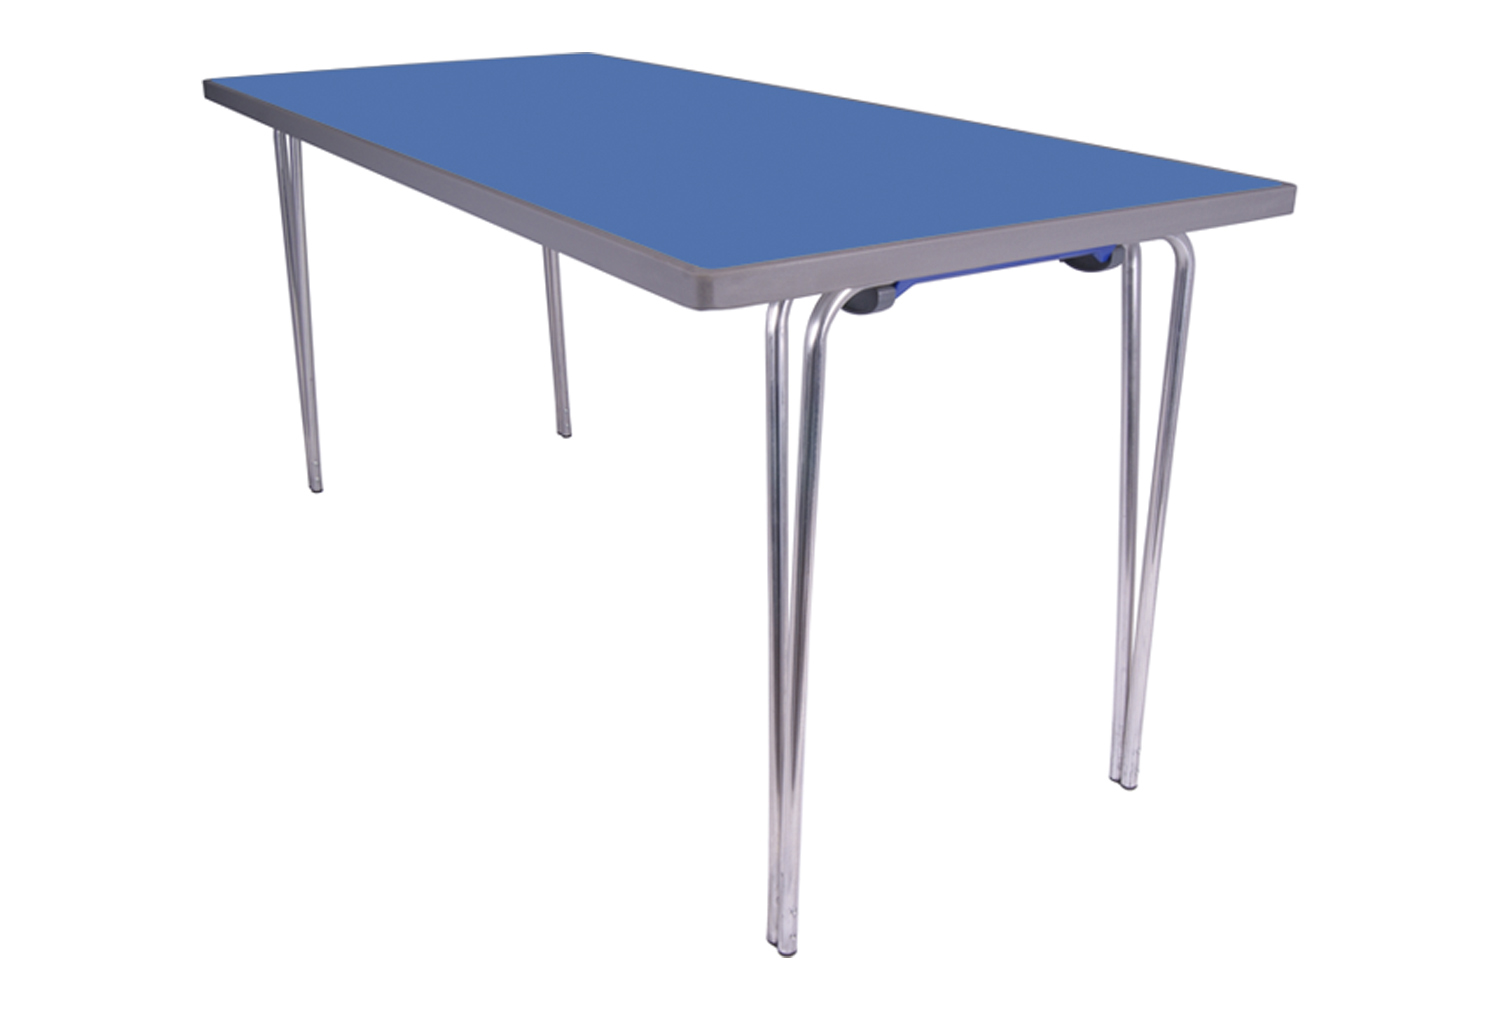 Gopak Contour Folding Table, 183wx76d (cm), Blue